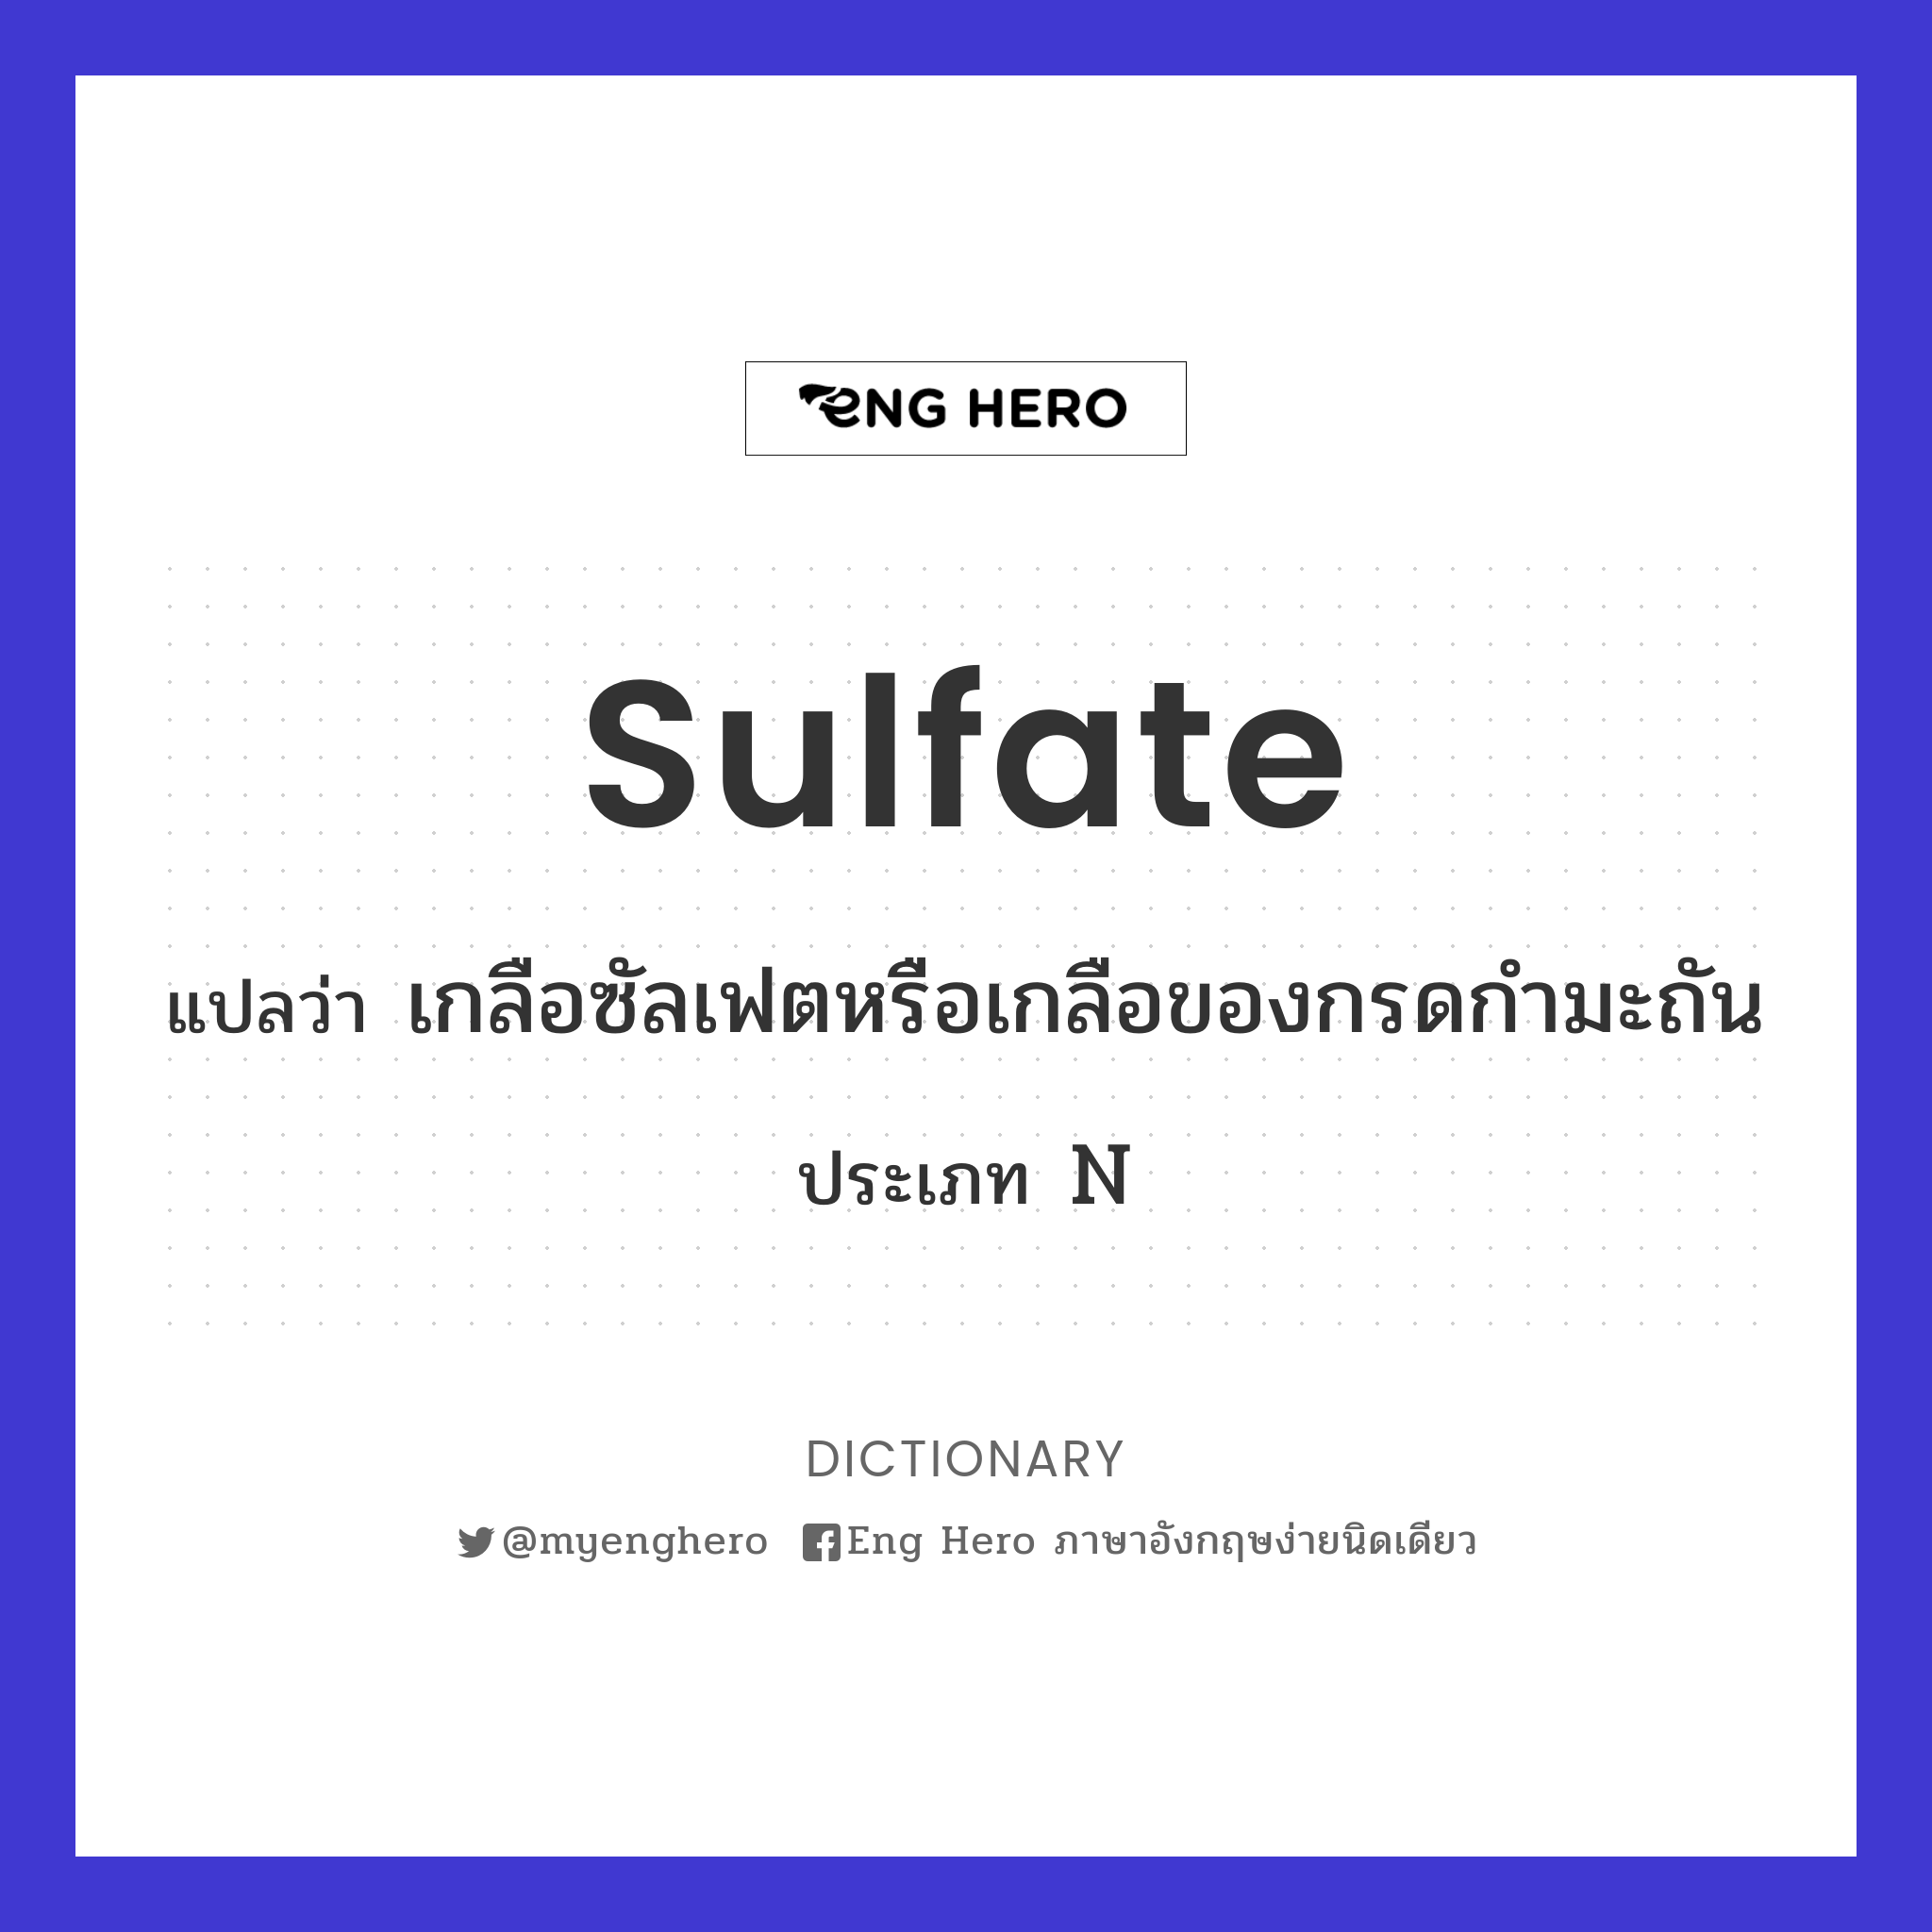 sulfate